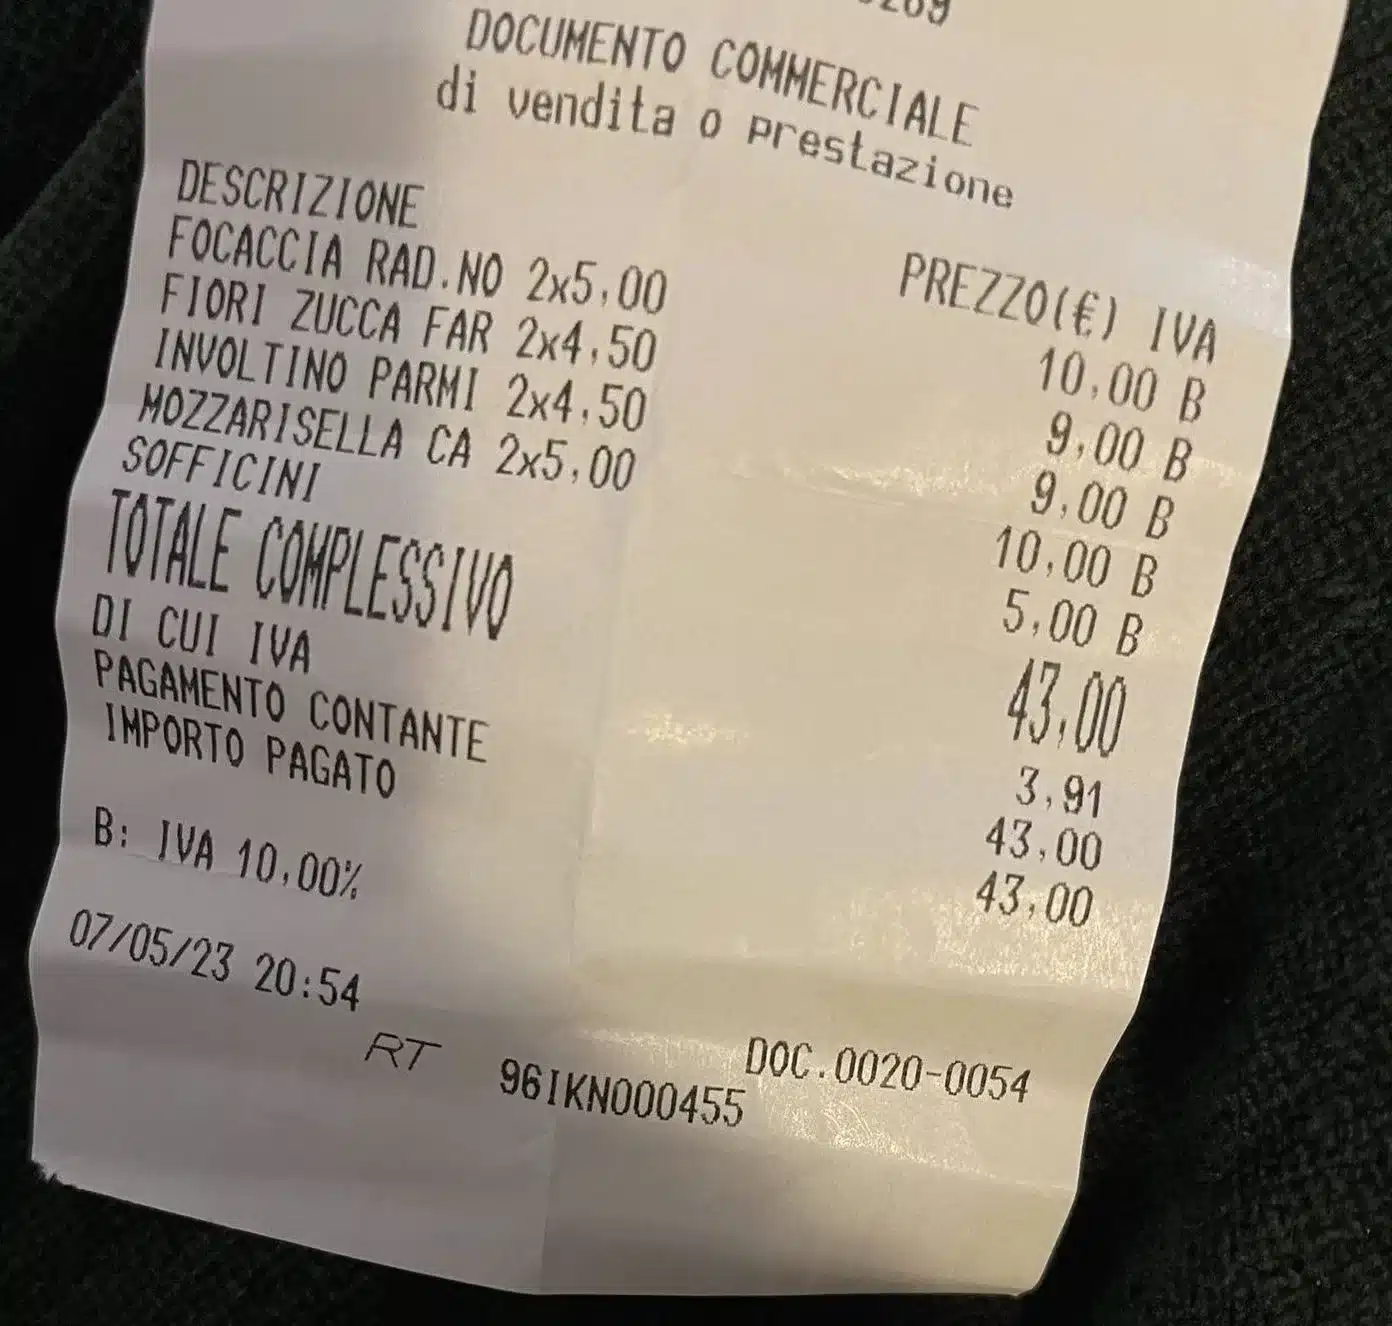 Spende 43 euro in panetteria: “Il cibo non era neanche fresco”